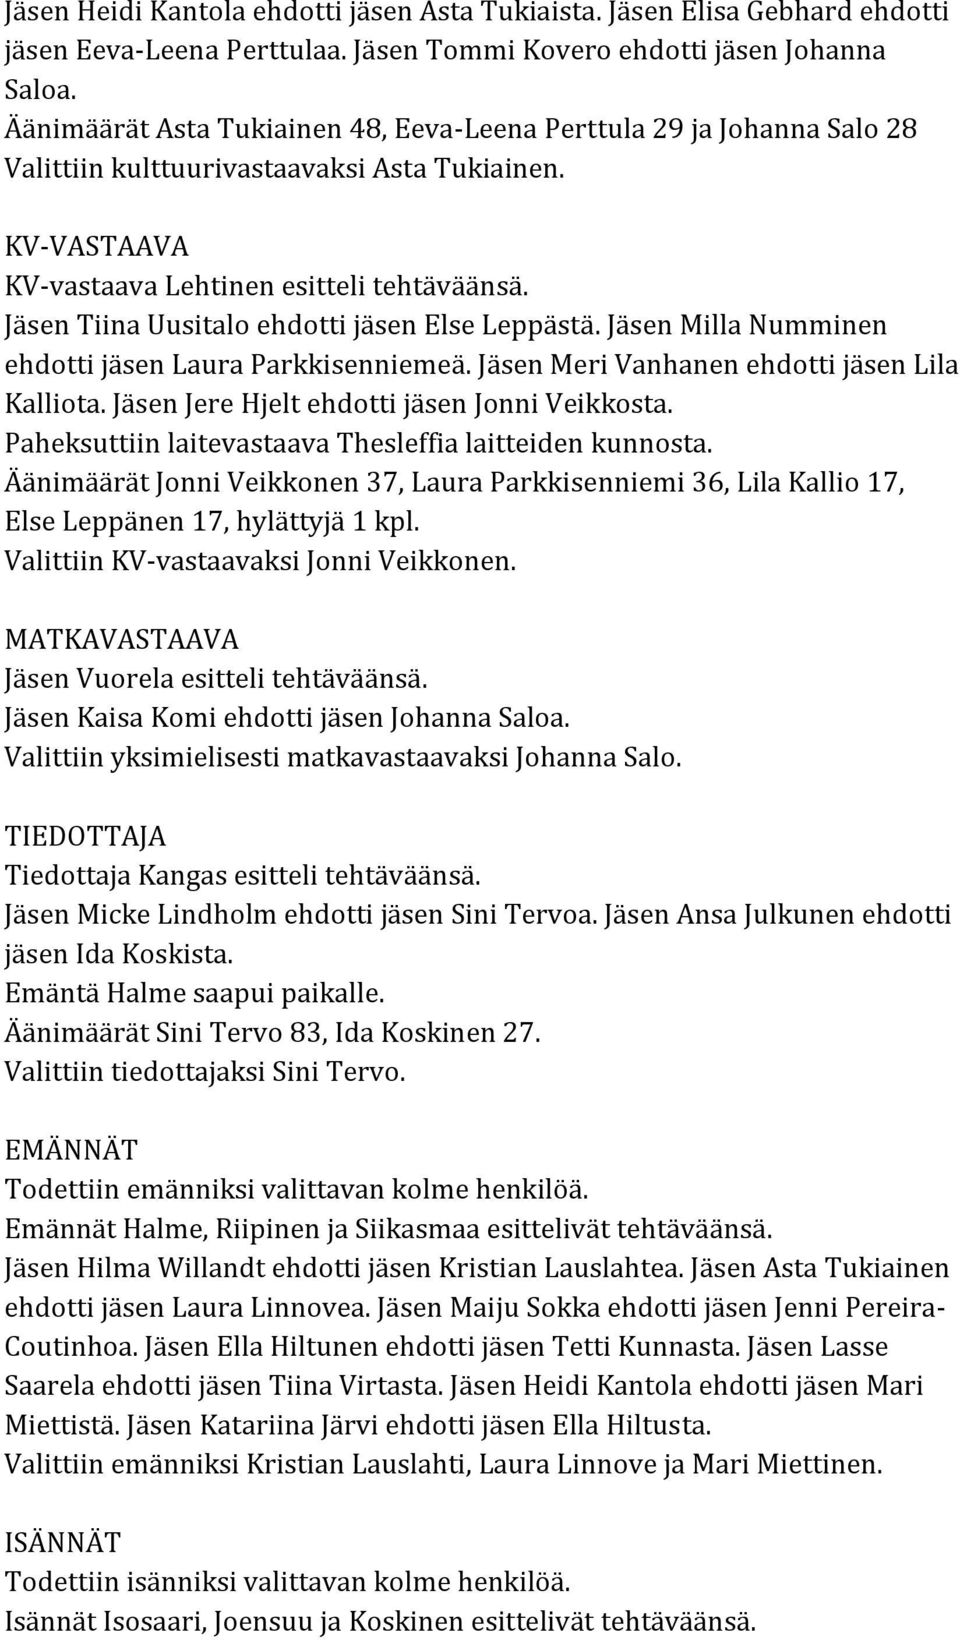 Jäsen Tiina Uusitalo ehdotti jäsen Else Leppästä. Jäsen Milla Numminen ehdotti jäsen Laura Parkkisenniemeä. Jäsen Meri Vanhanen ehdotti jäsen Lila Kalliota.